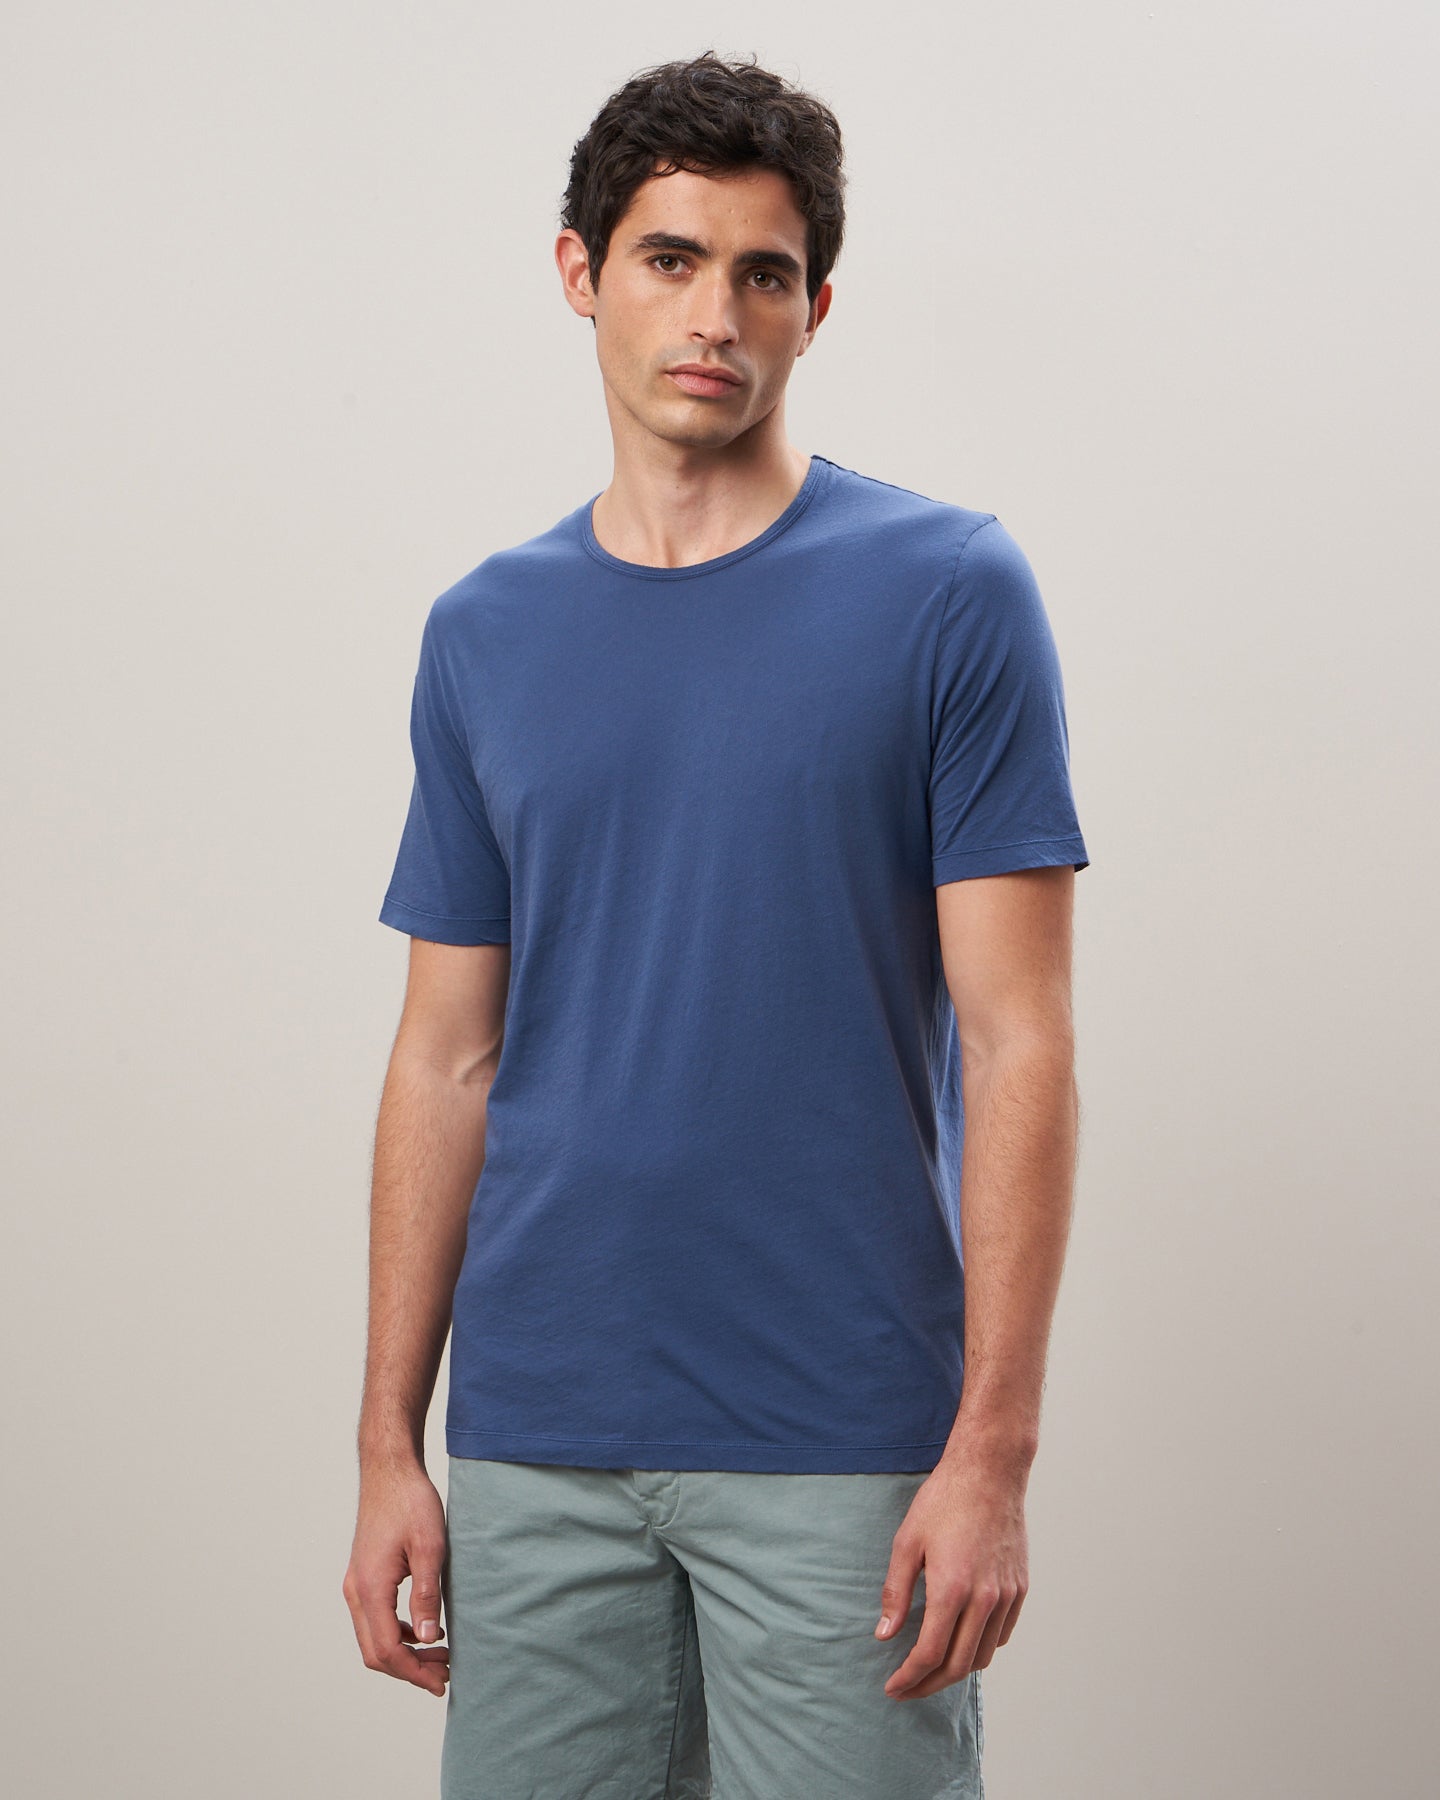 Tee Shirt Homme en jersey de coton Bleu cobalt BB64301-05